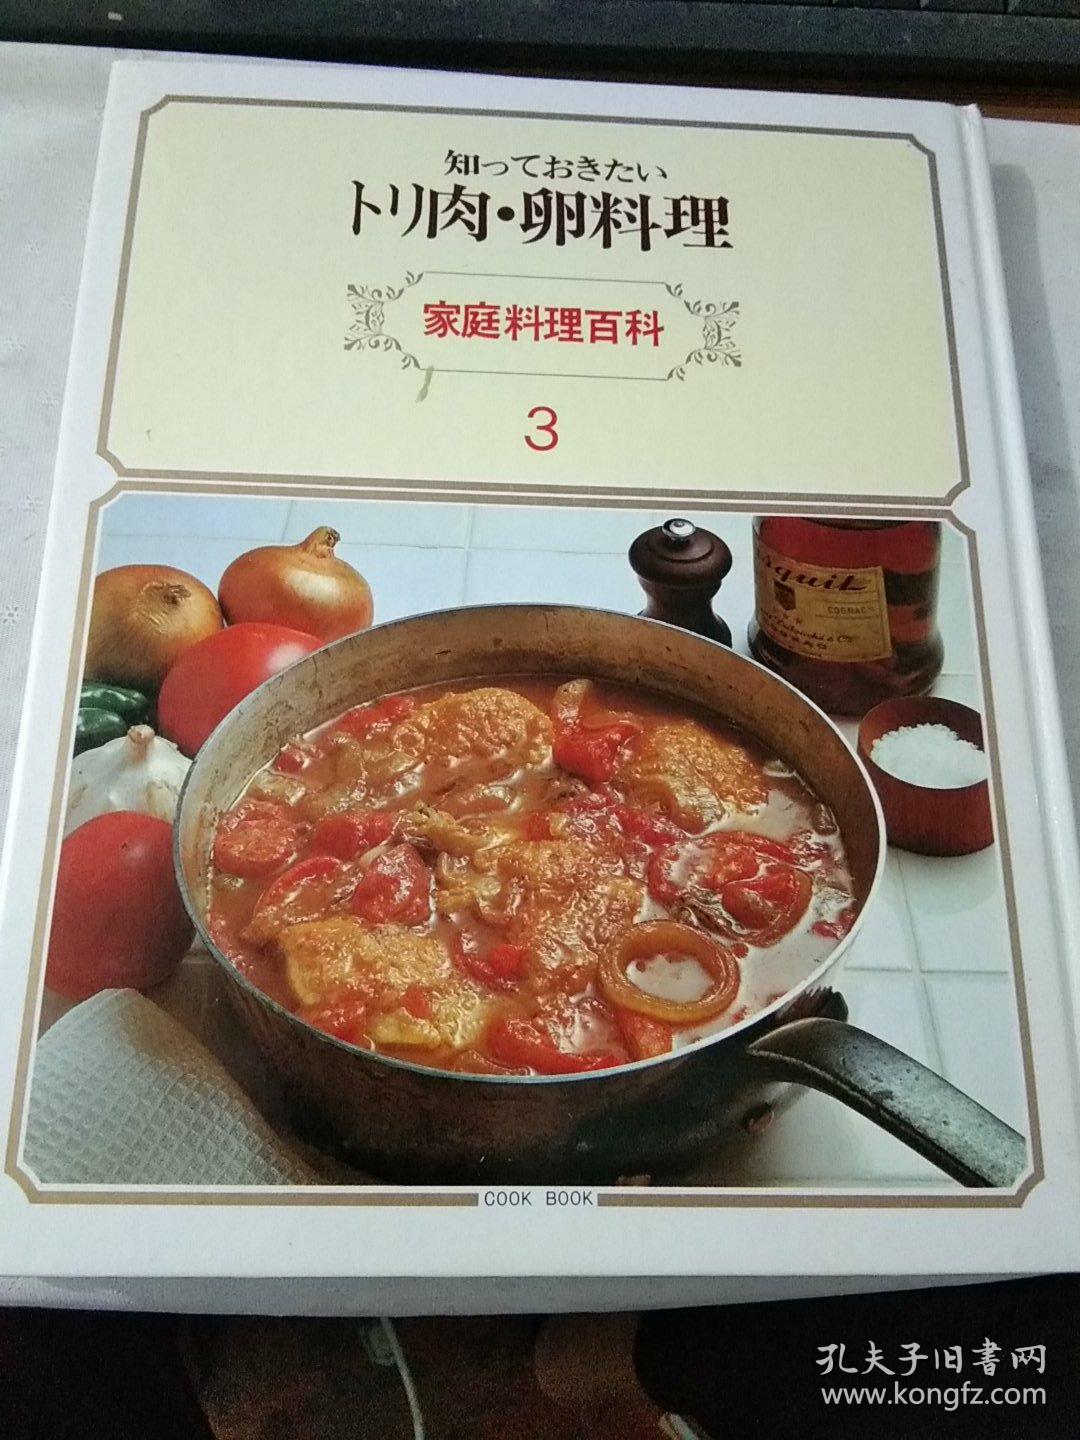 日文版家庭料理百科 3 三肉卵料理 1980年版 精装大16开166页 大量彩图 原函 孔夫子旧书网